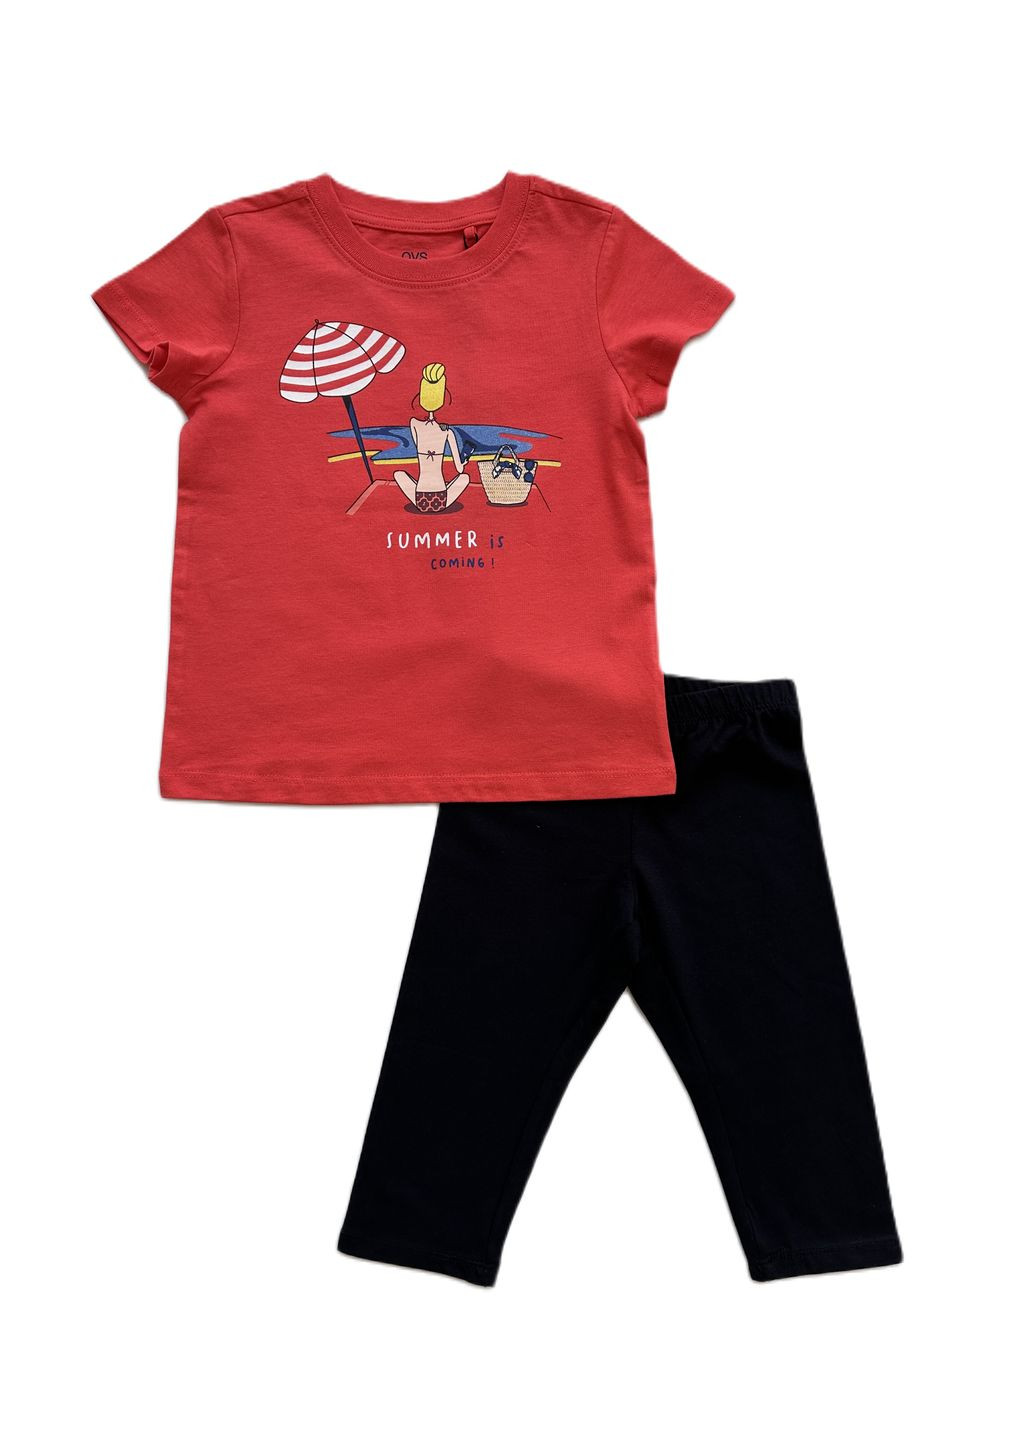 Красный летний комплект костюм для девочки футболка красный пляж 2000-11+ велосипедки черные трикотажные 2000-12 (104 см) OVS